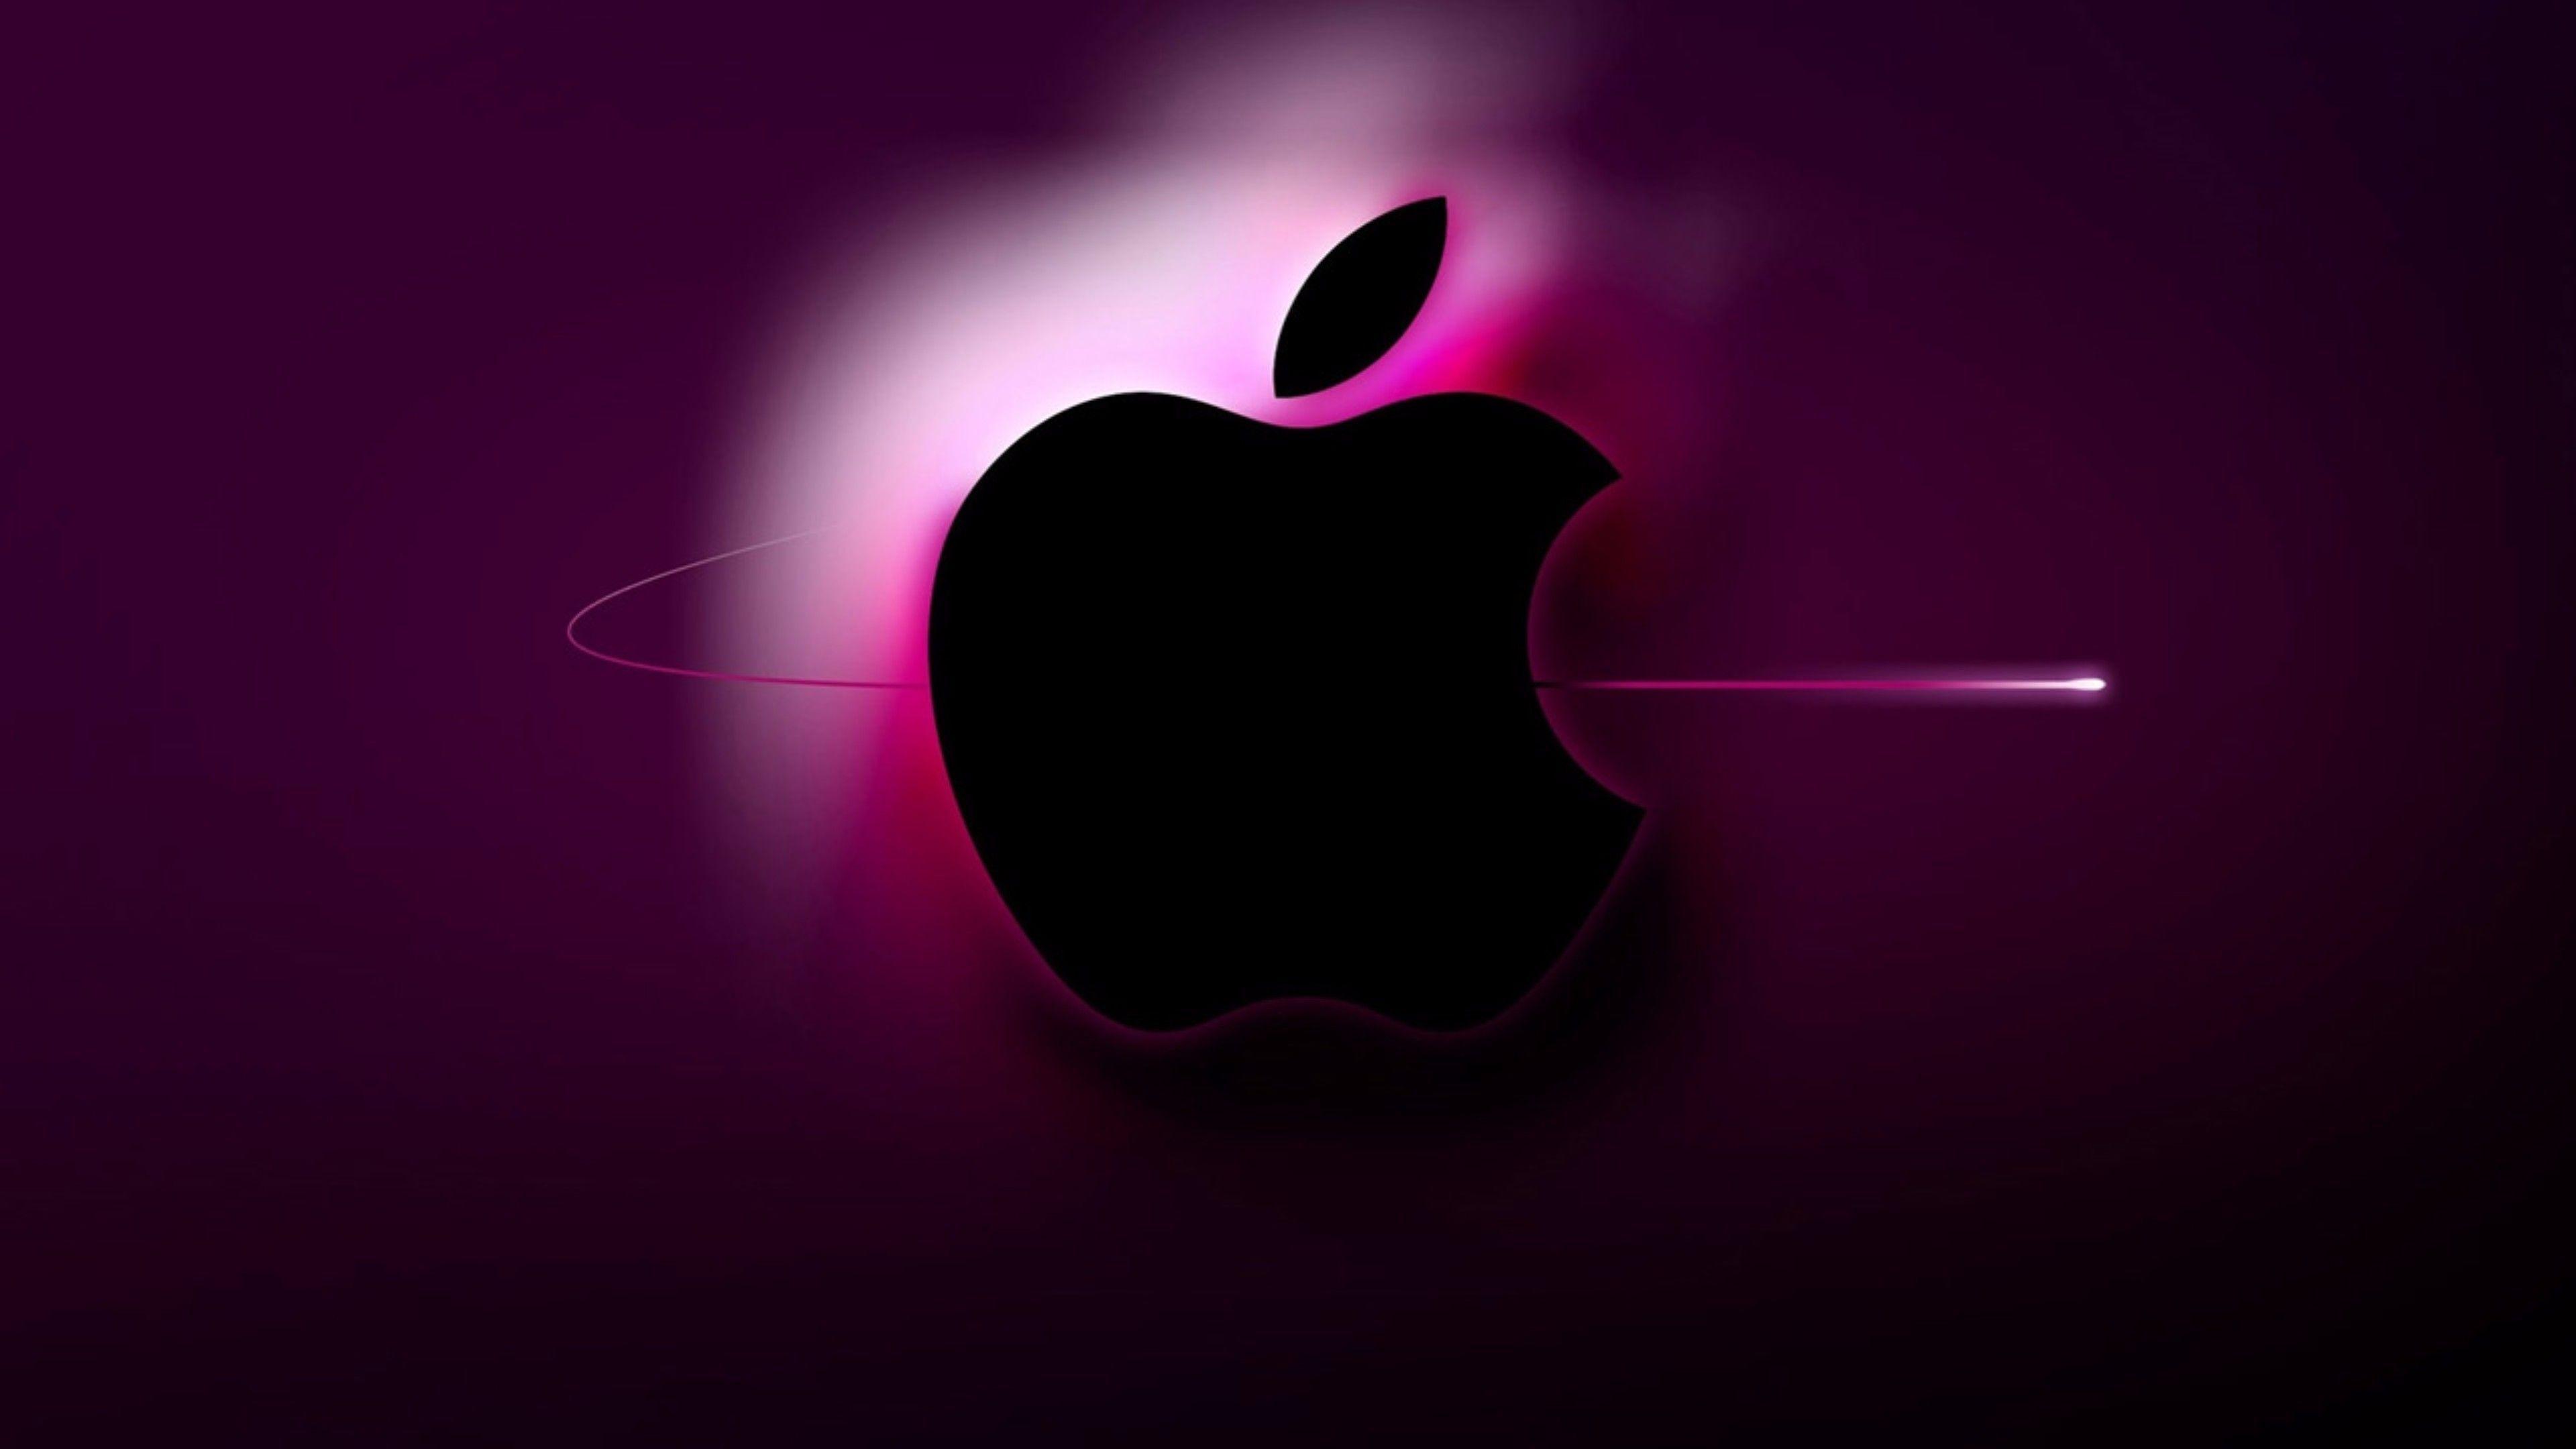 instal the new version for apple 4K Downloader 5.7.6